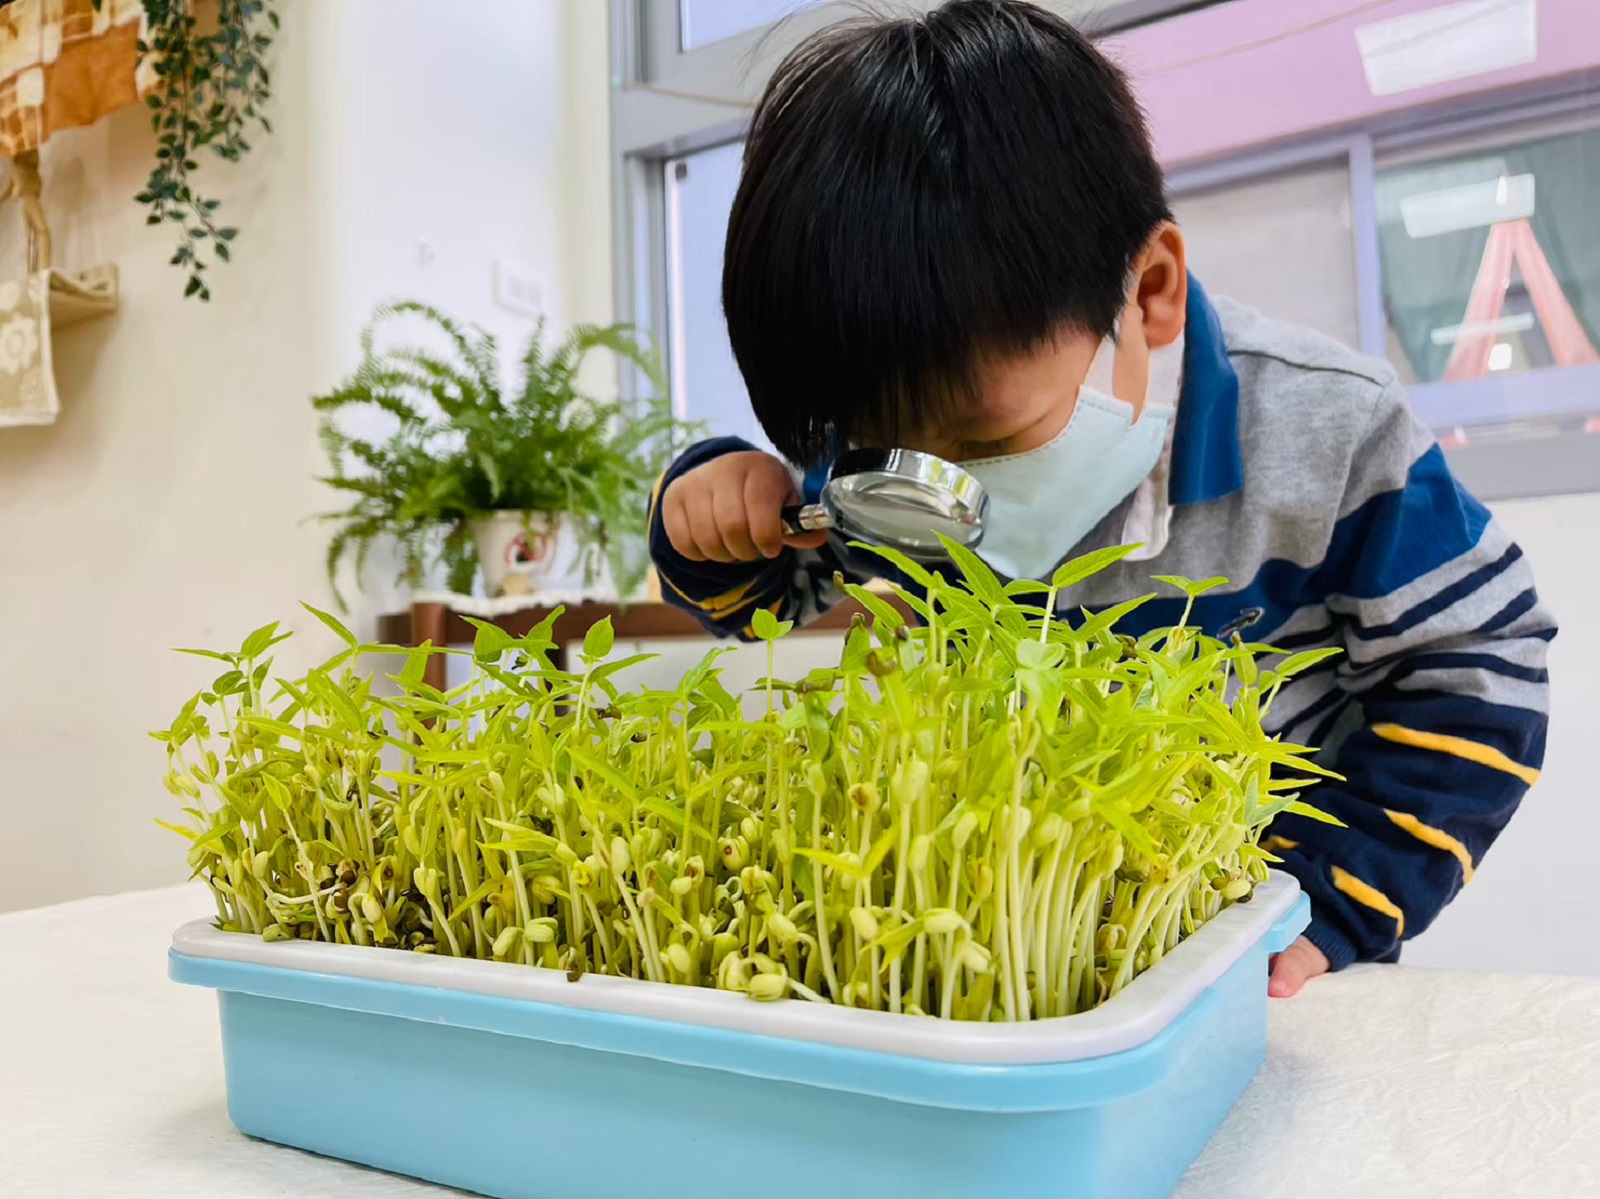 幼兒觀察與測量綠豆芽變化（桃園市大和非營利幼兒園提供）